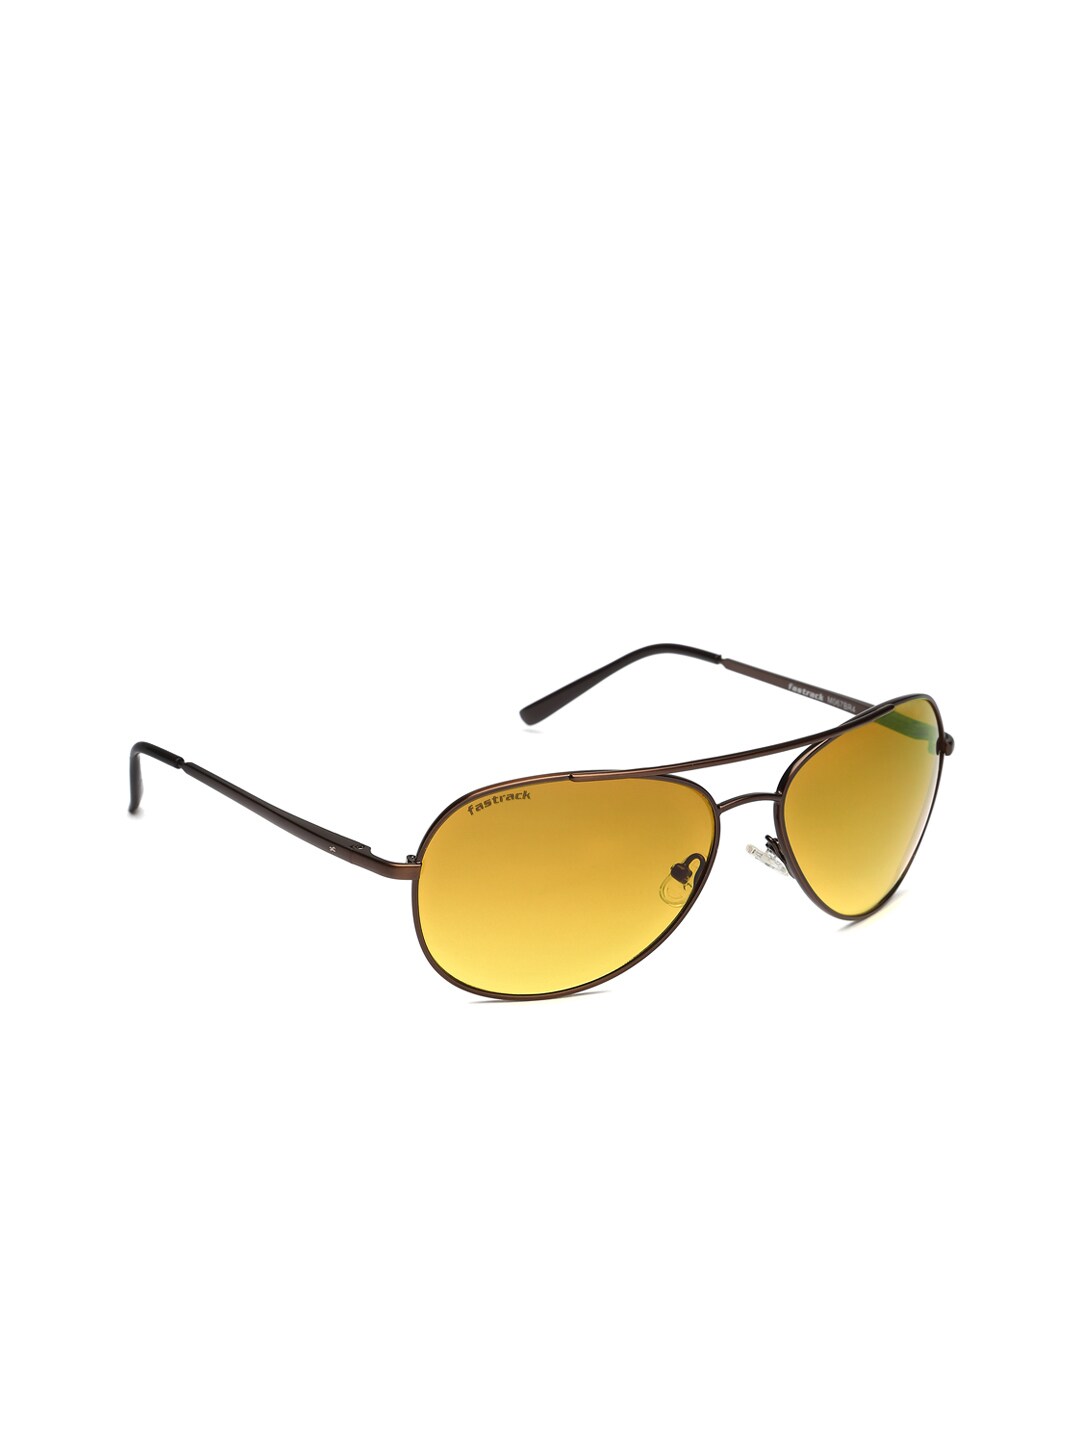 Fastrack Unisex Brown Gradient Sunglasses